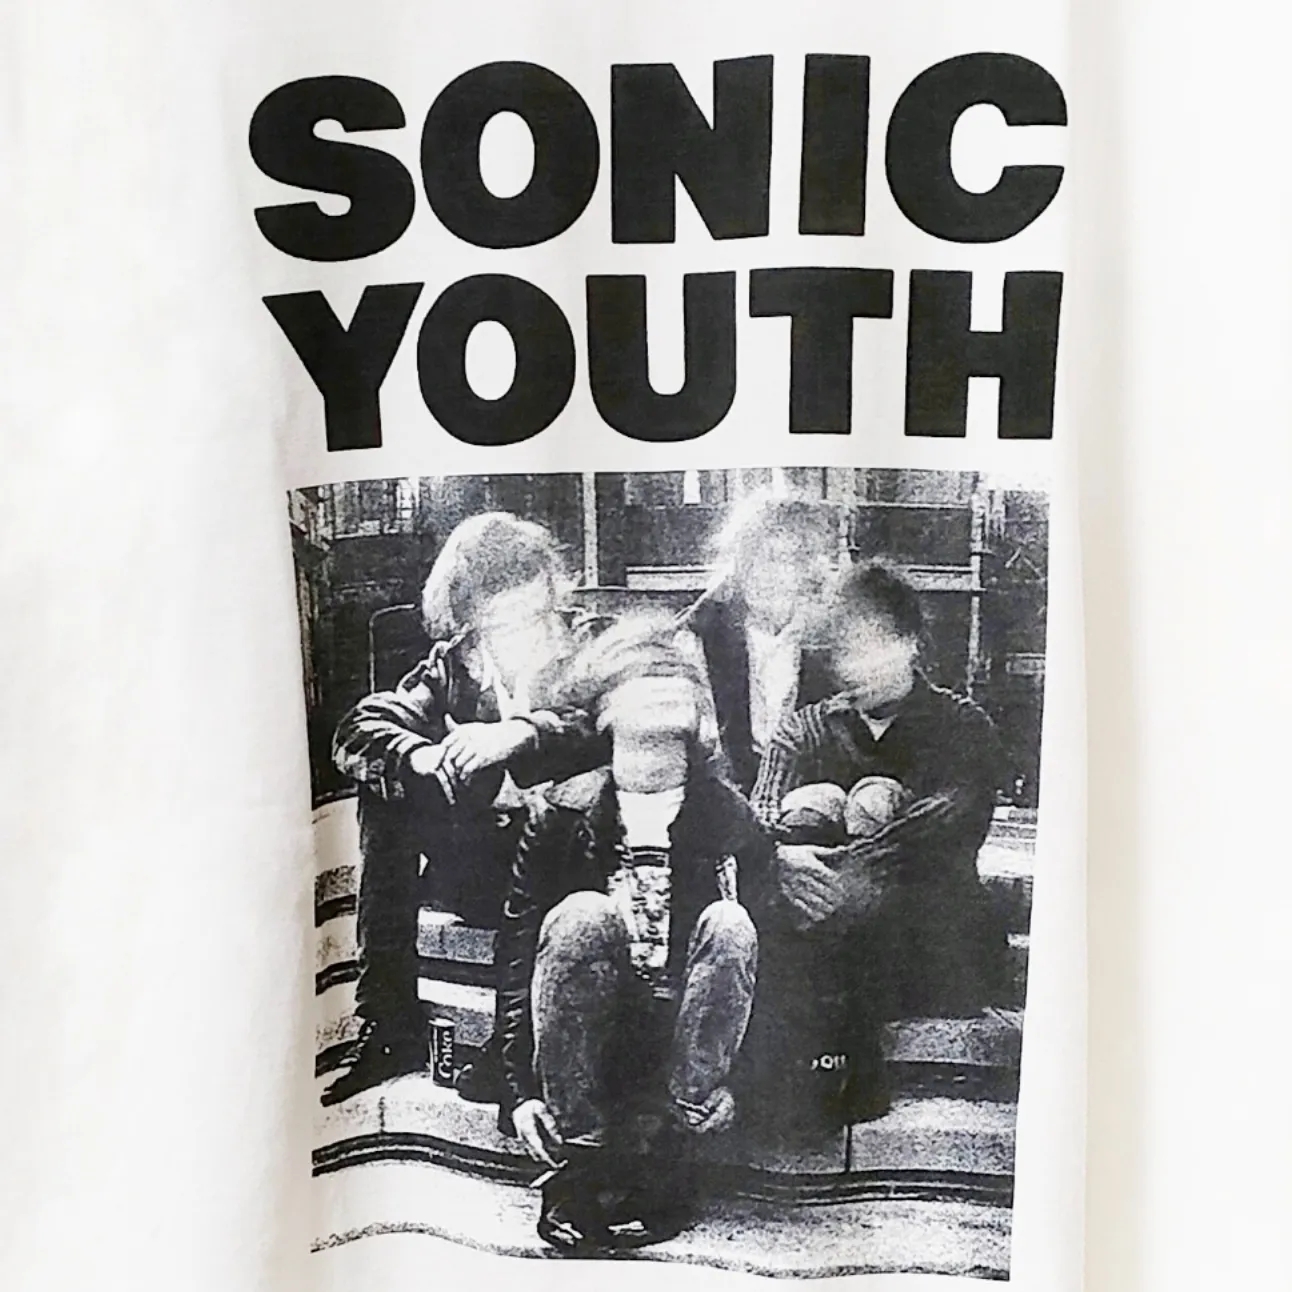 激レア！ HYSTERIC GLAMOUR × SONIC YOUTH Tシャツ | Vintage.City